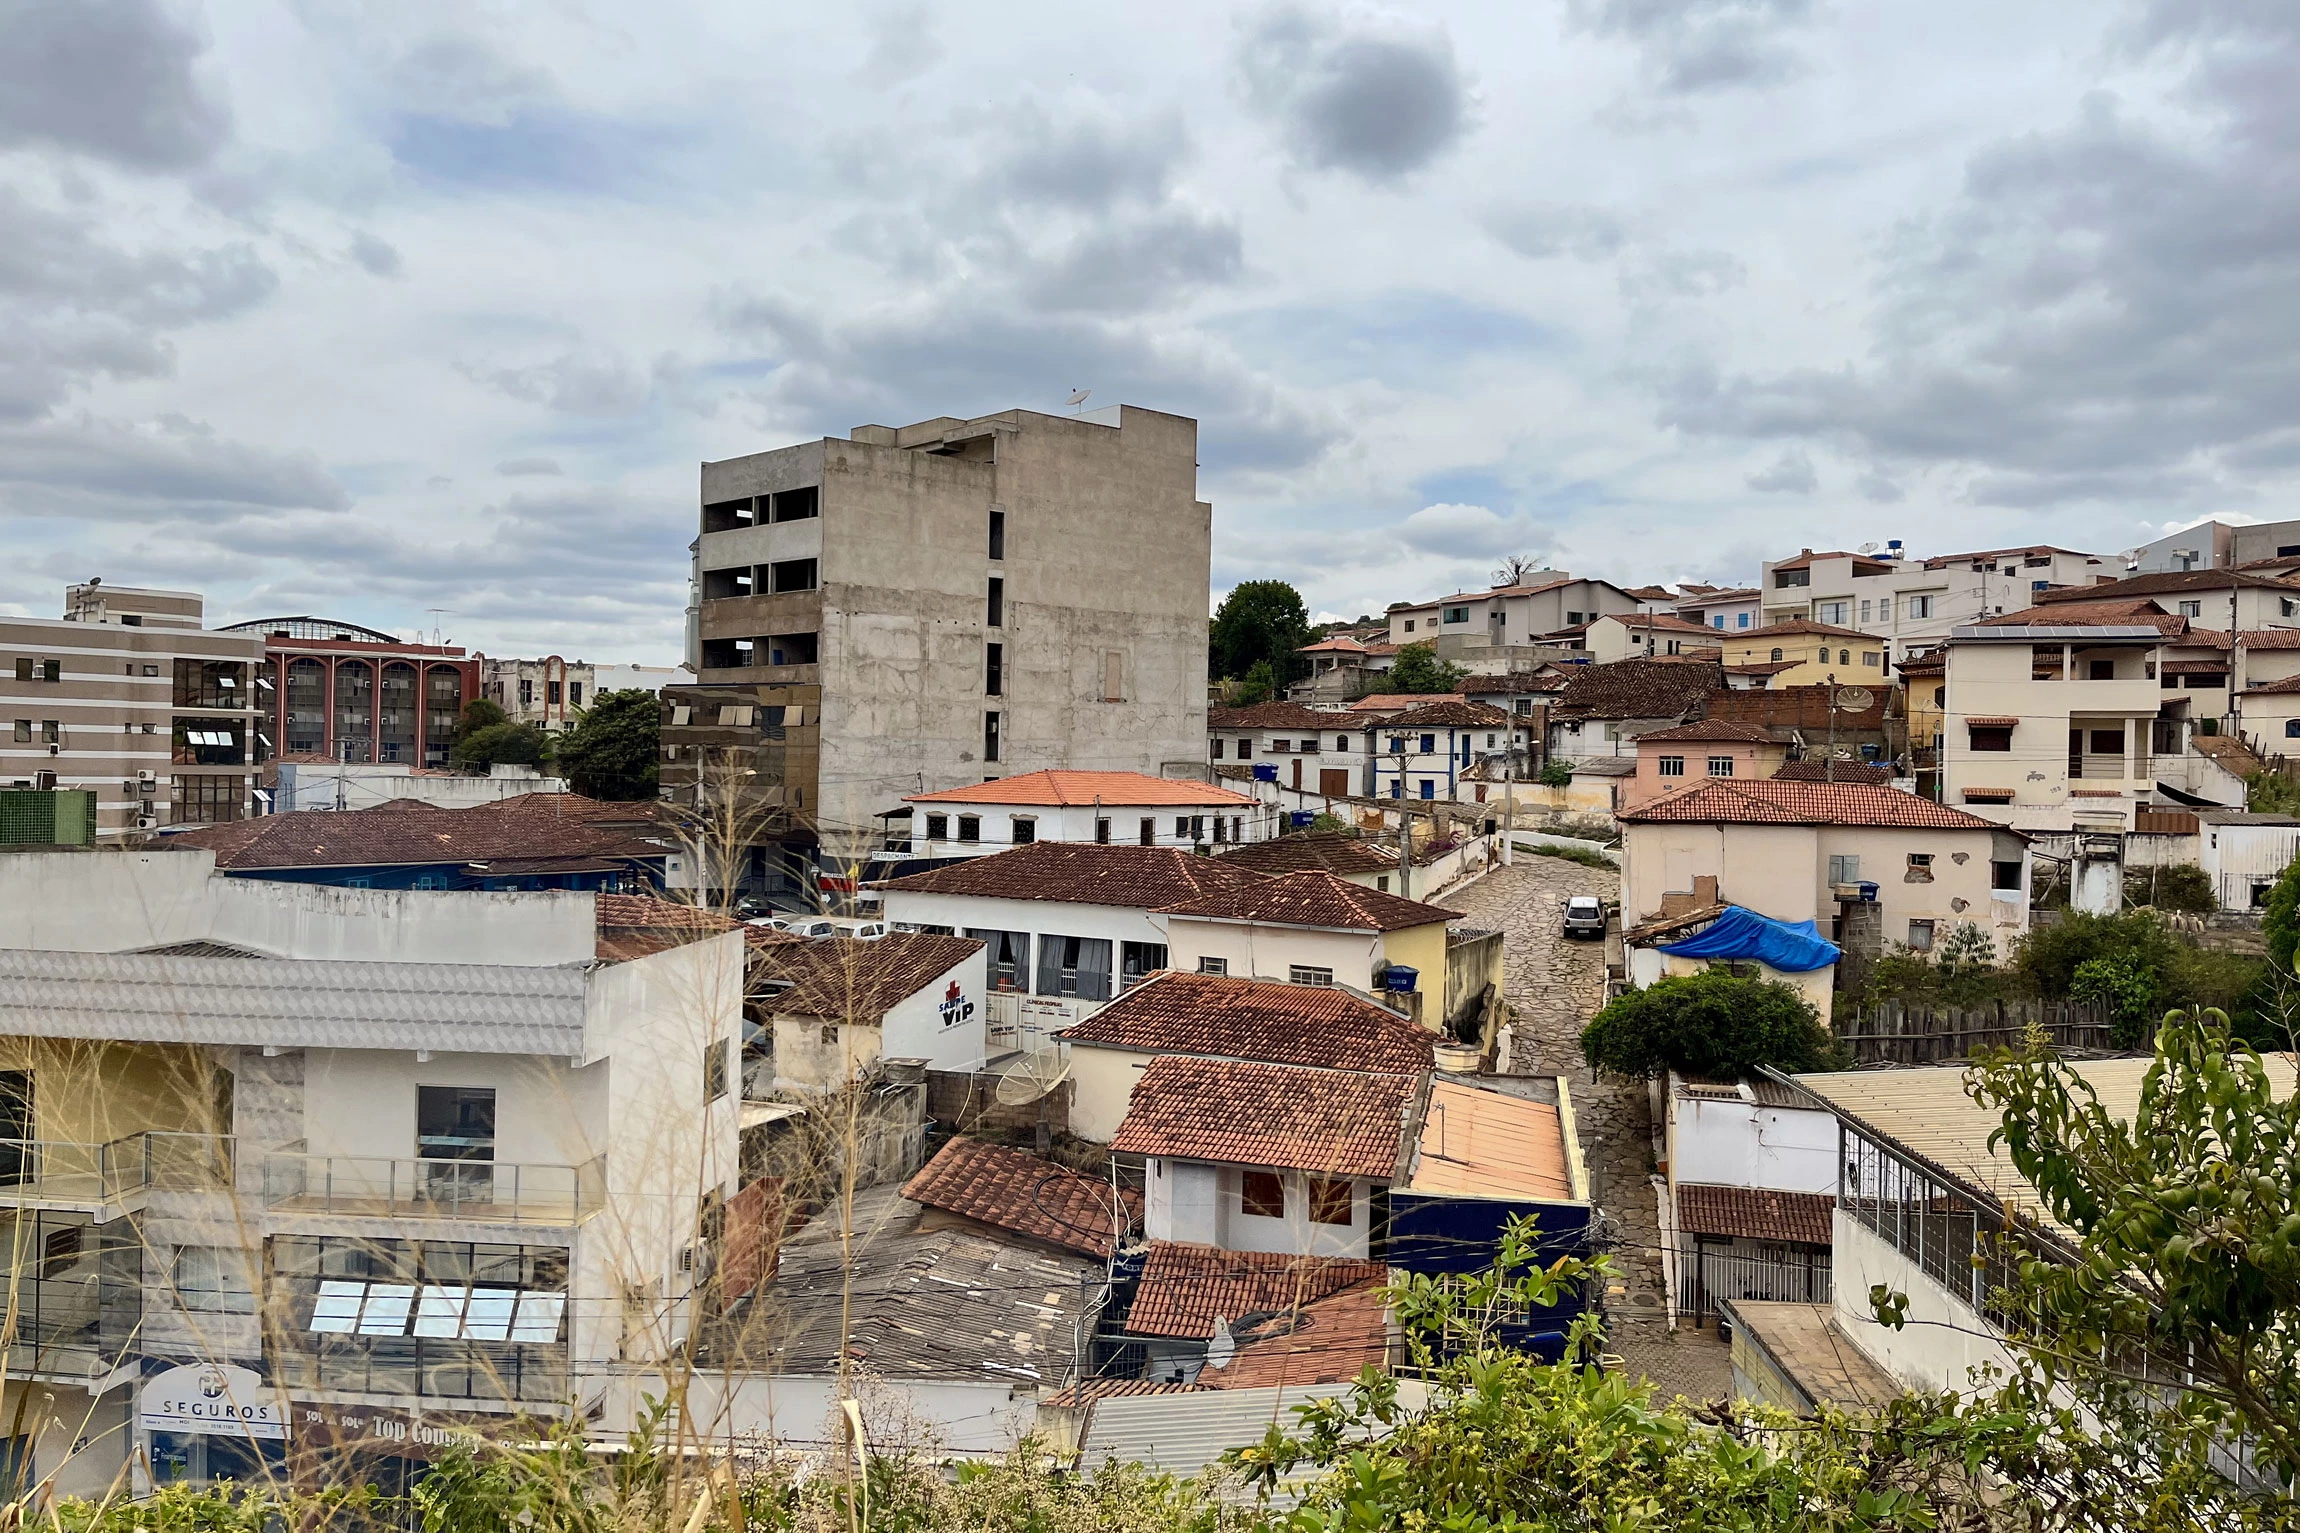 Vista do centro da cidade de Capelinha, onde circulavam os panfletos irregulares com mentiras sobre Lula.